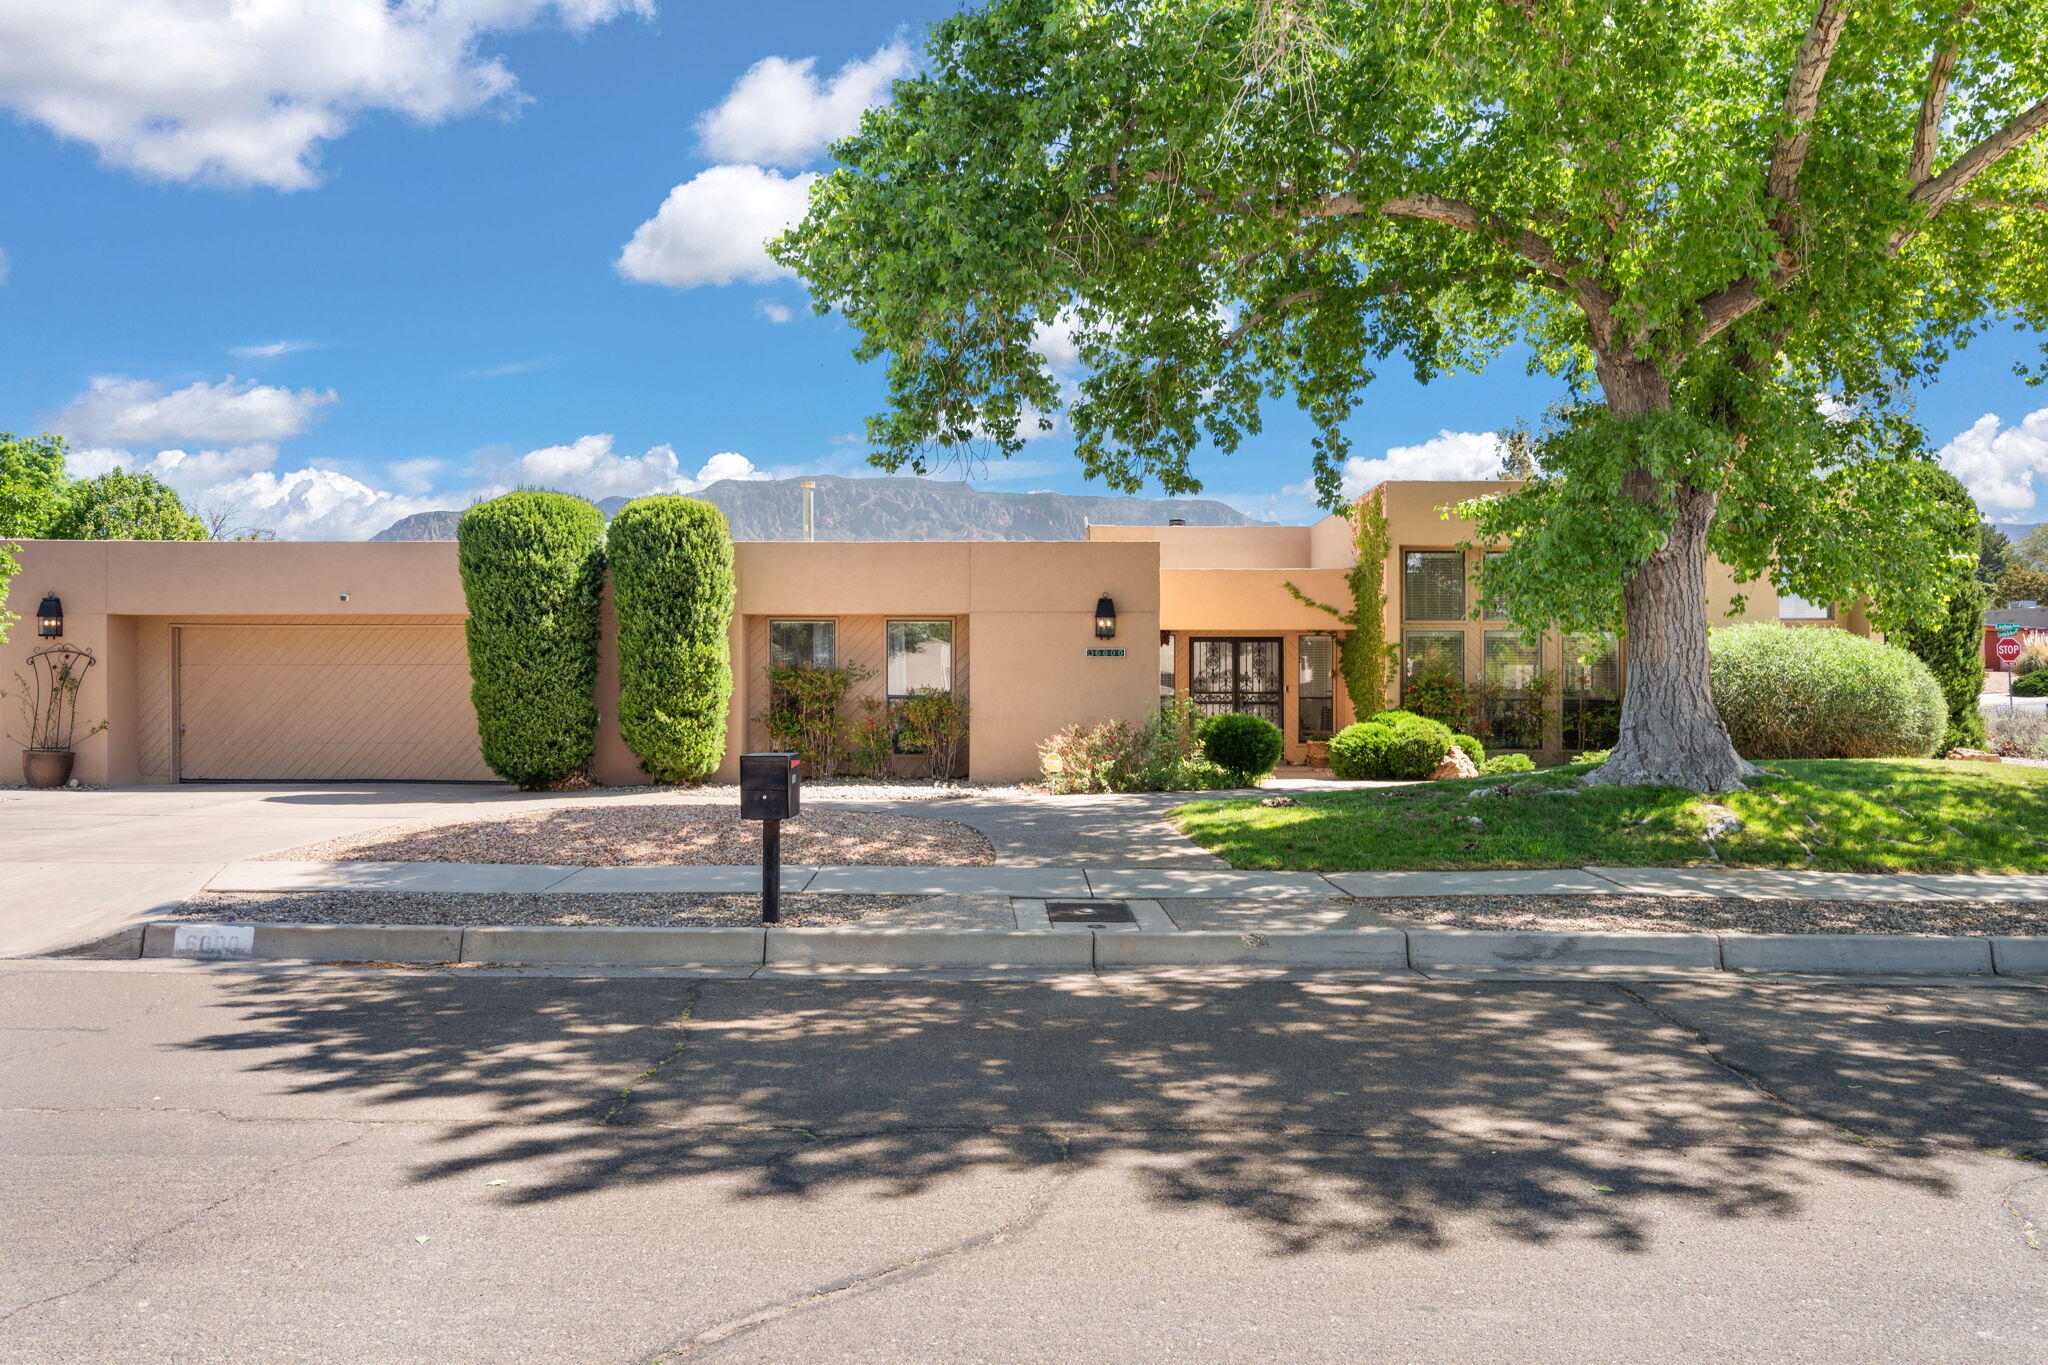 6000 Pueblo Verde NE, Albuquerque, New Mexico 87111, 4 Bedrooms Bedrooms, ,3 BathroomsBathrooms,Residential,For Sale,6000 Pueblo Verde NE,1061471